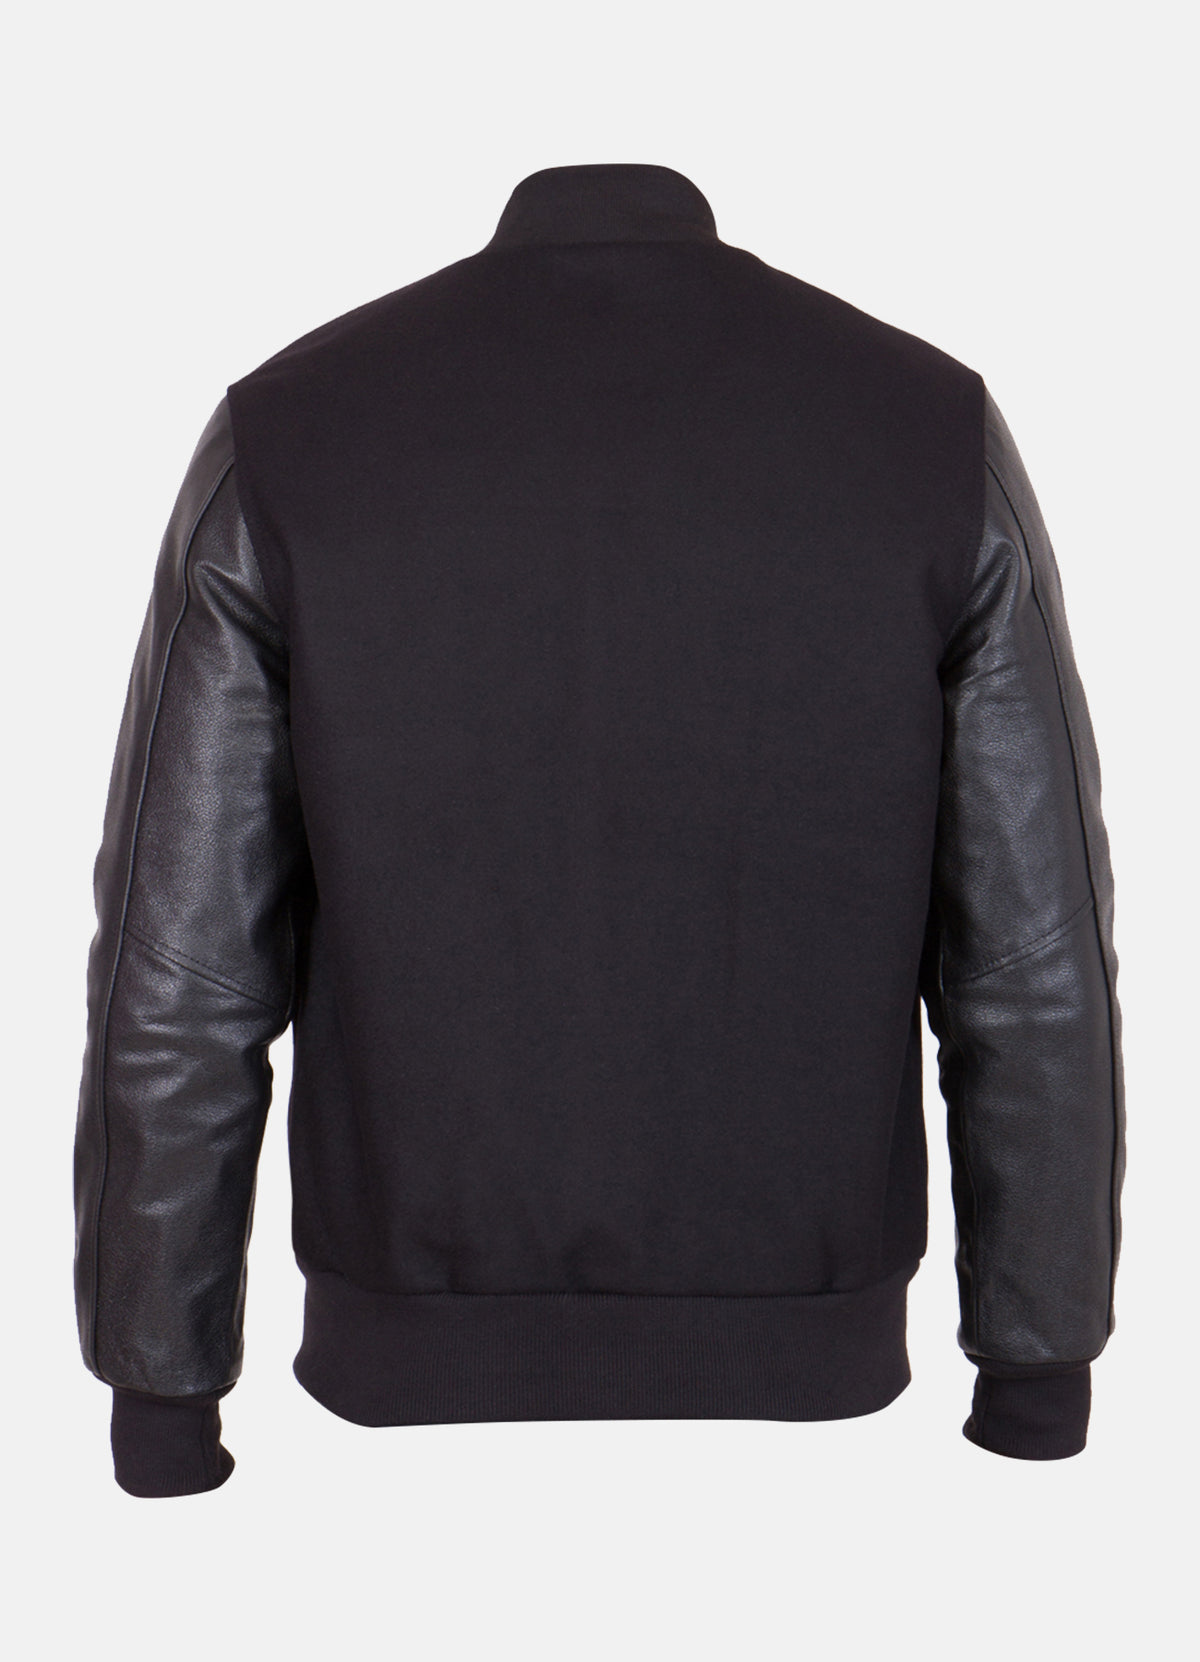 Mens Classic Black Varsity Jacket | Elite Jacket